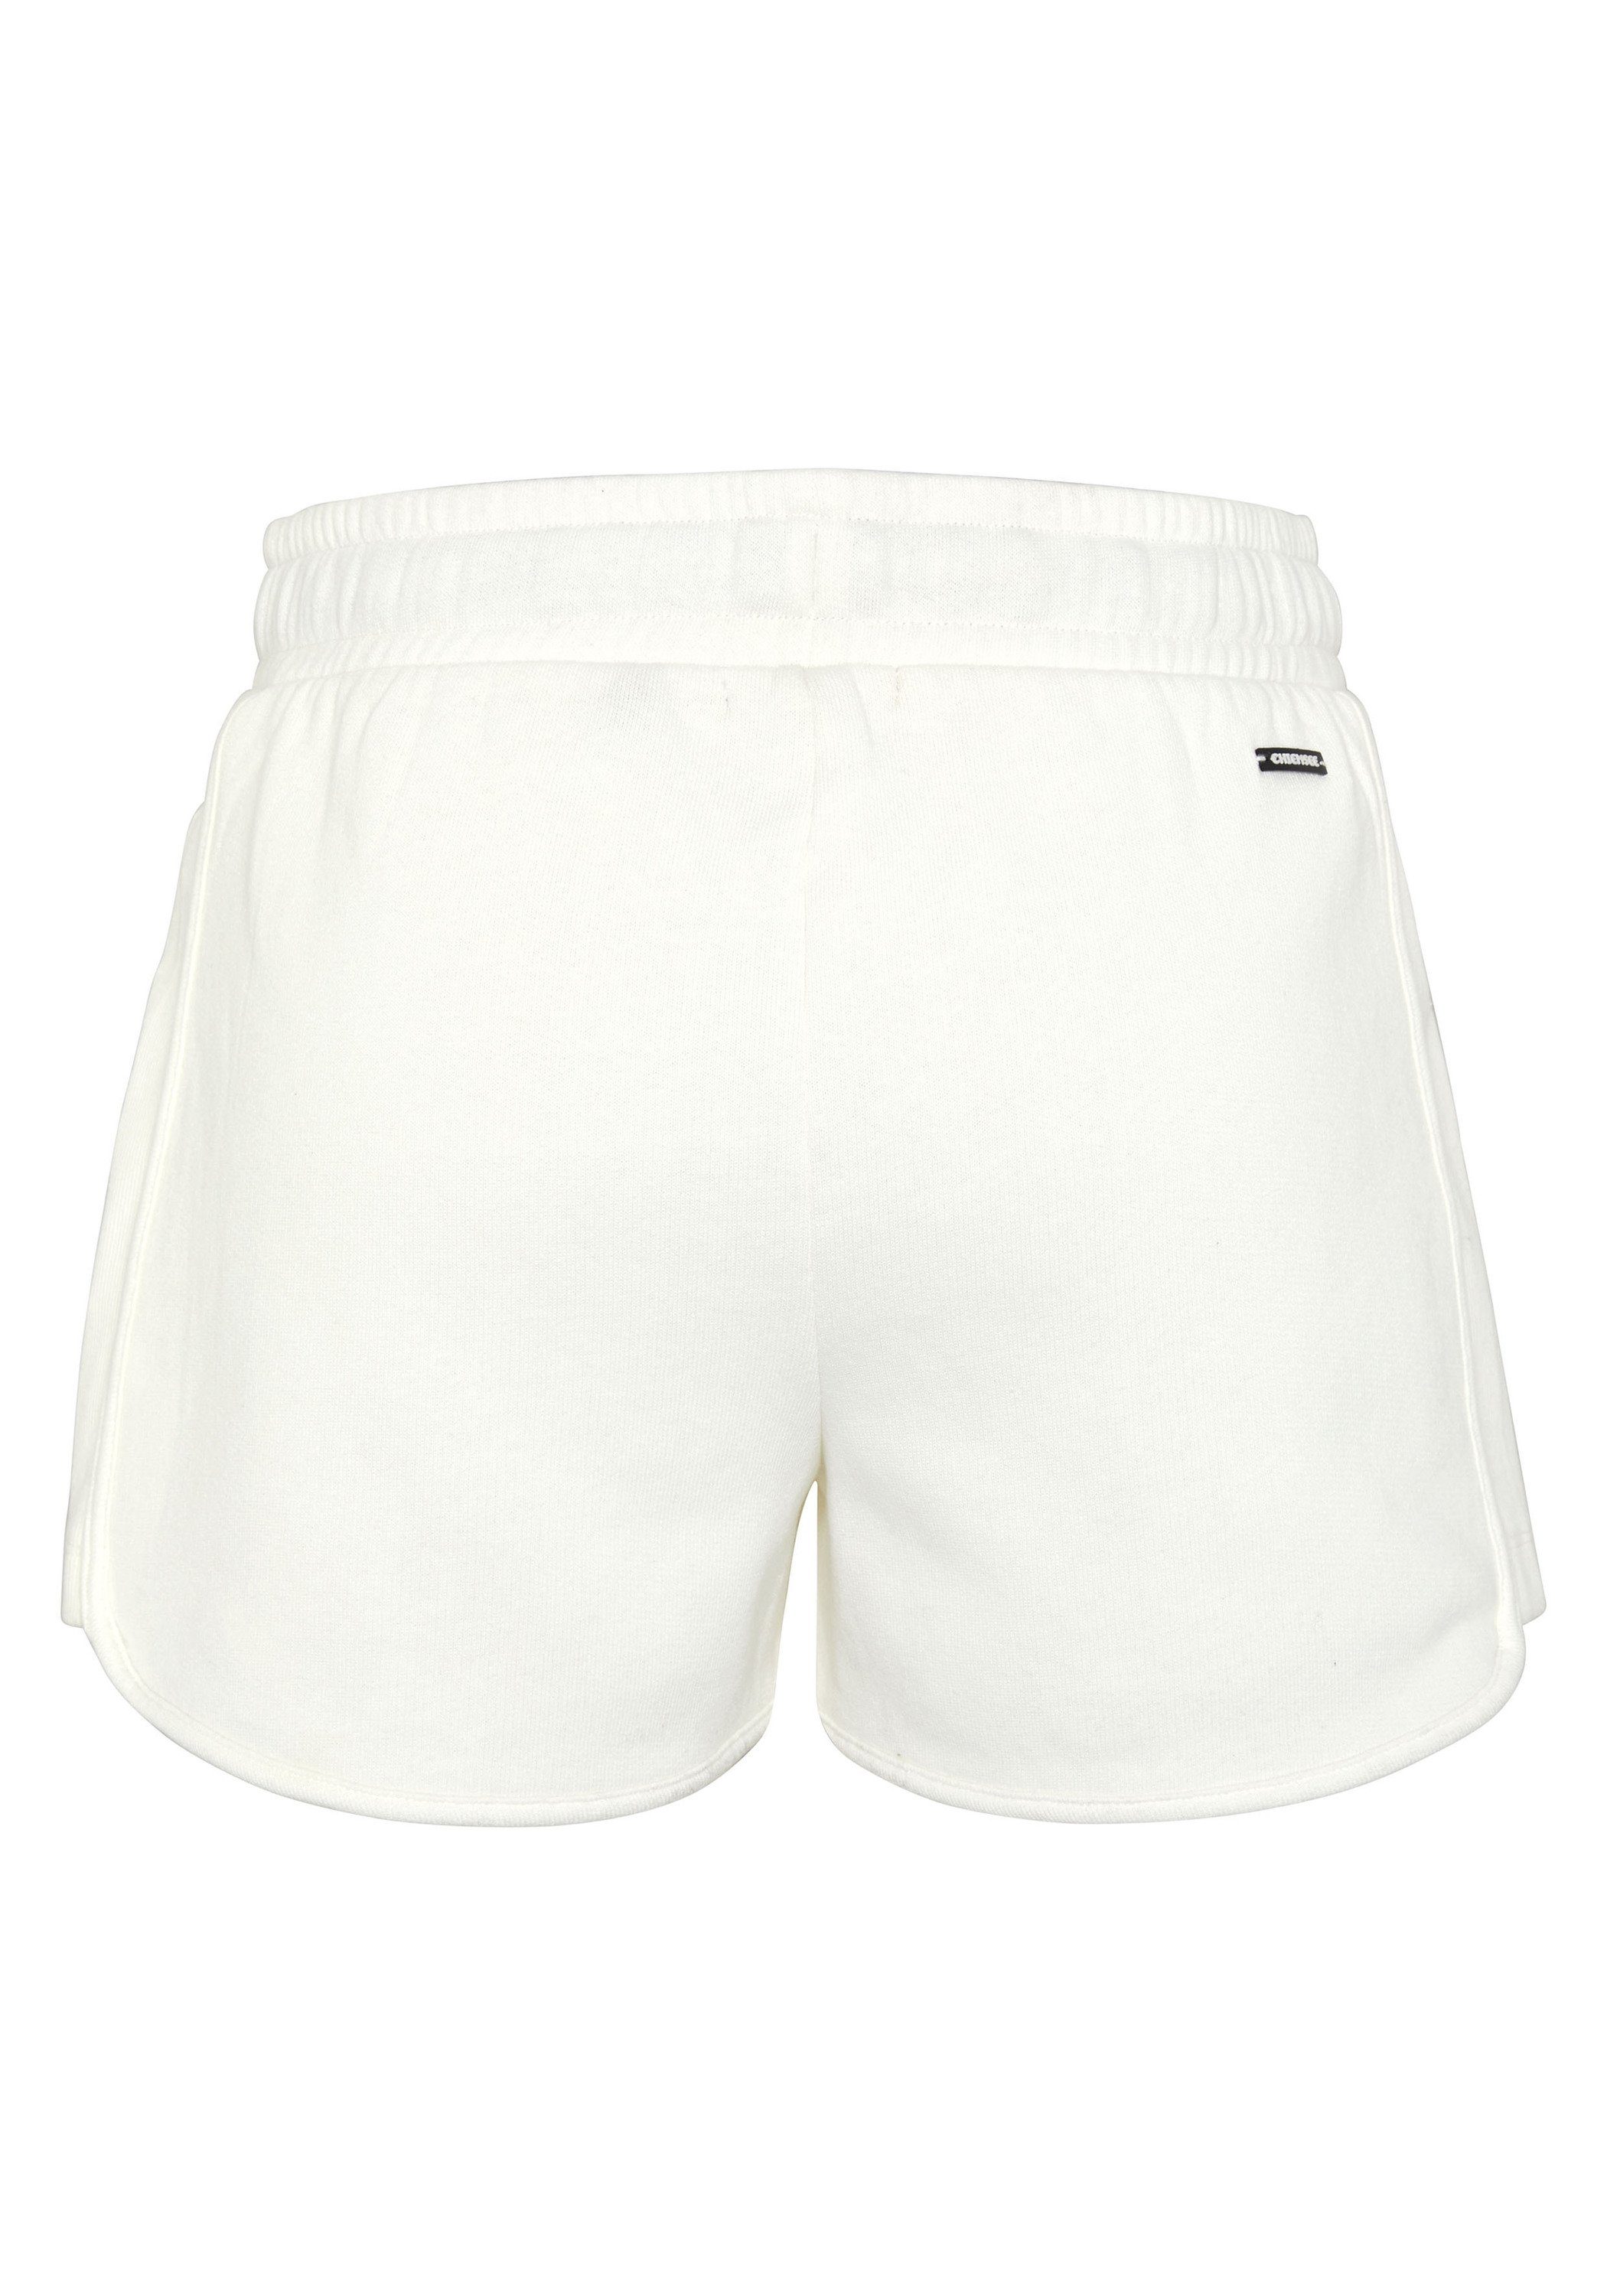 Bund White mit Sweatshorts Sweat-Shorts Chiemsee Star 1 breitem